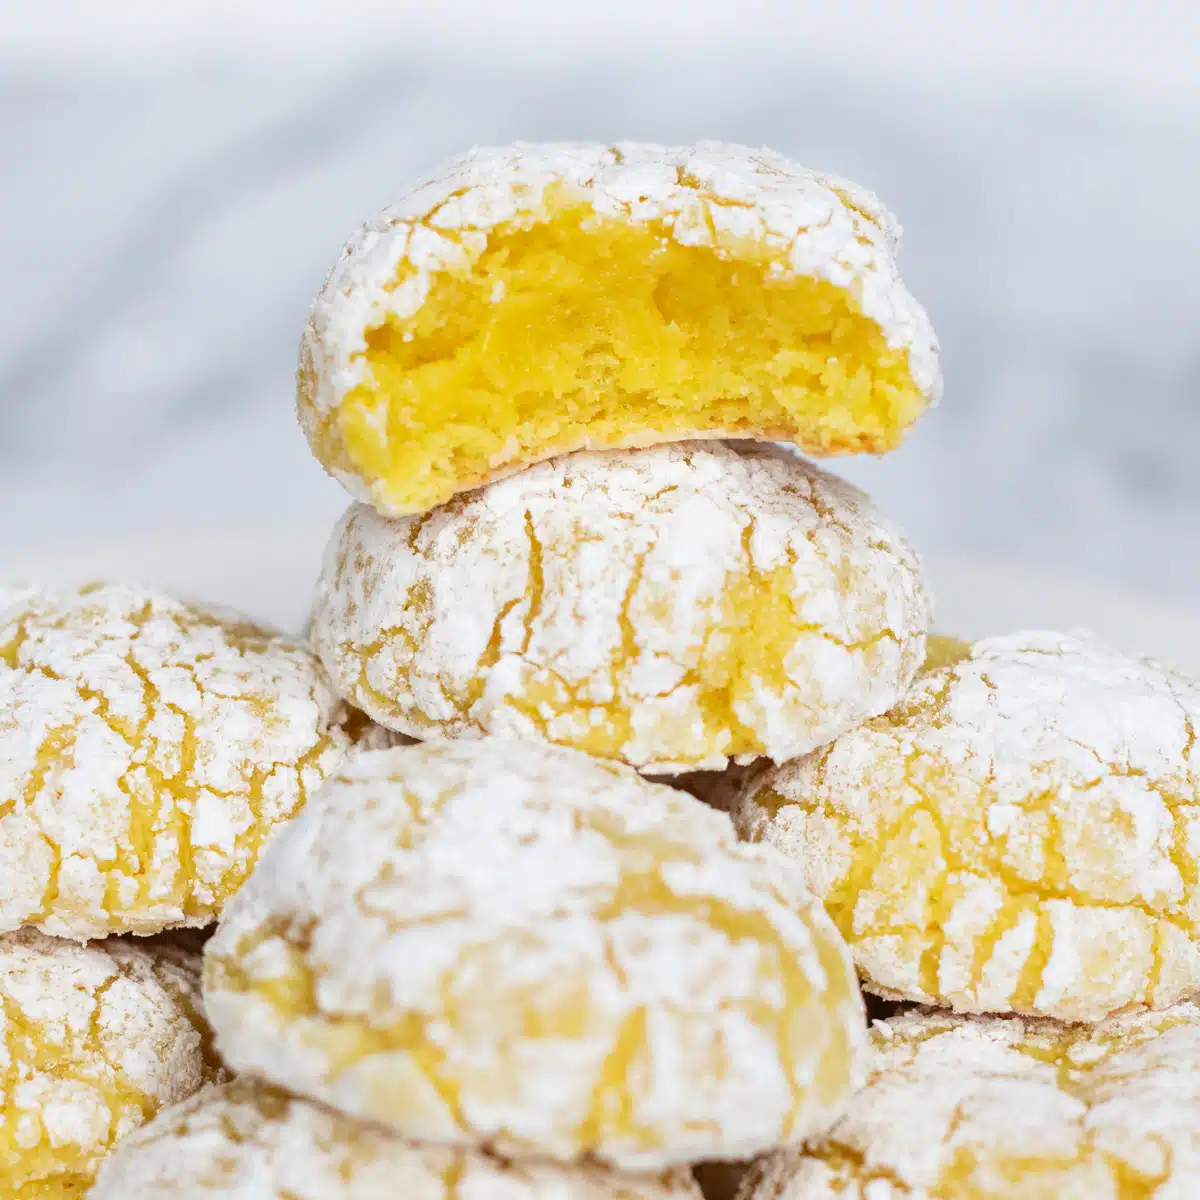 Super jemné citronové sušenky se smetanovým sýrem naskládané s kousnutím zobrazujícím žlutý střed horní sušenky.